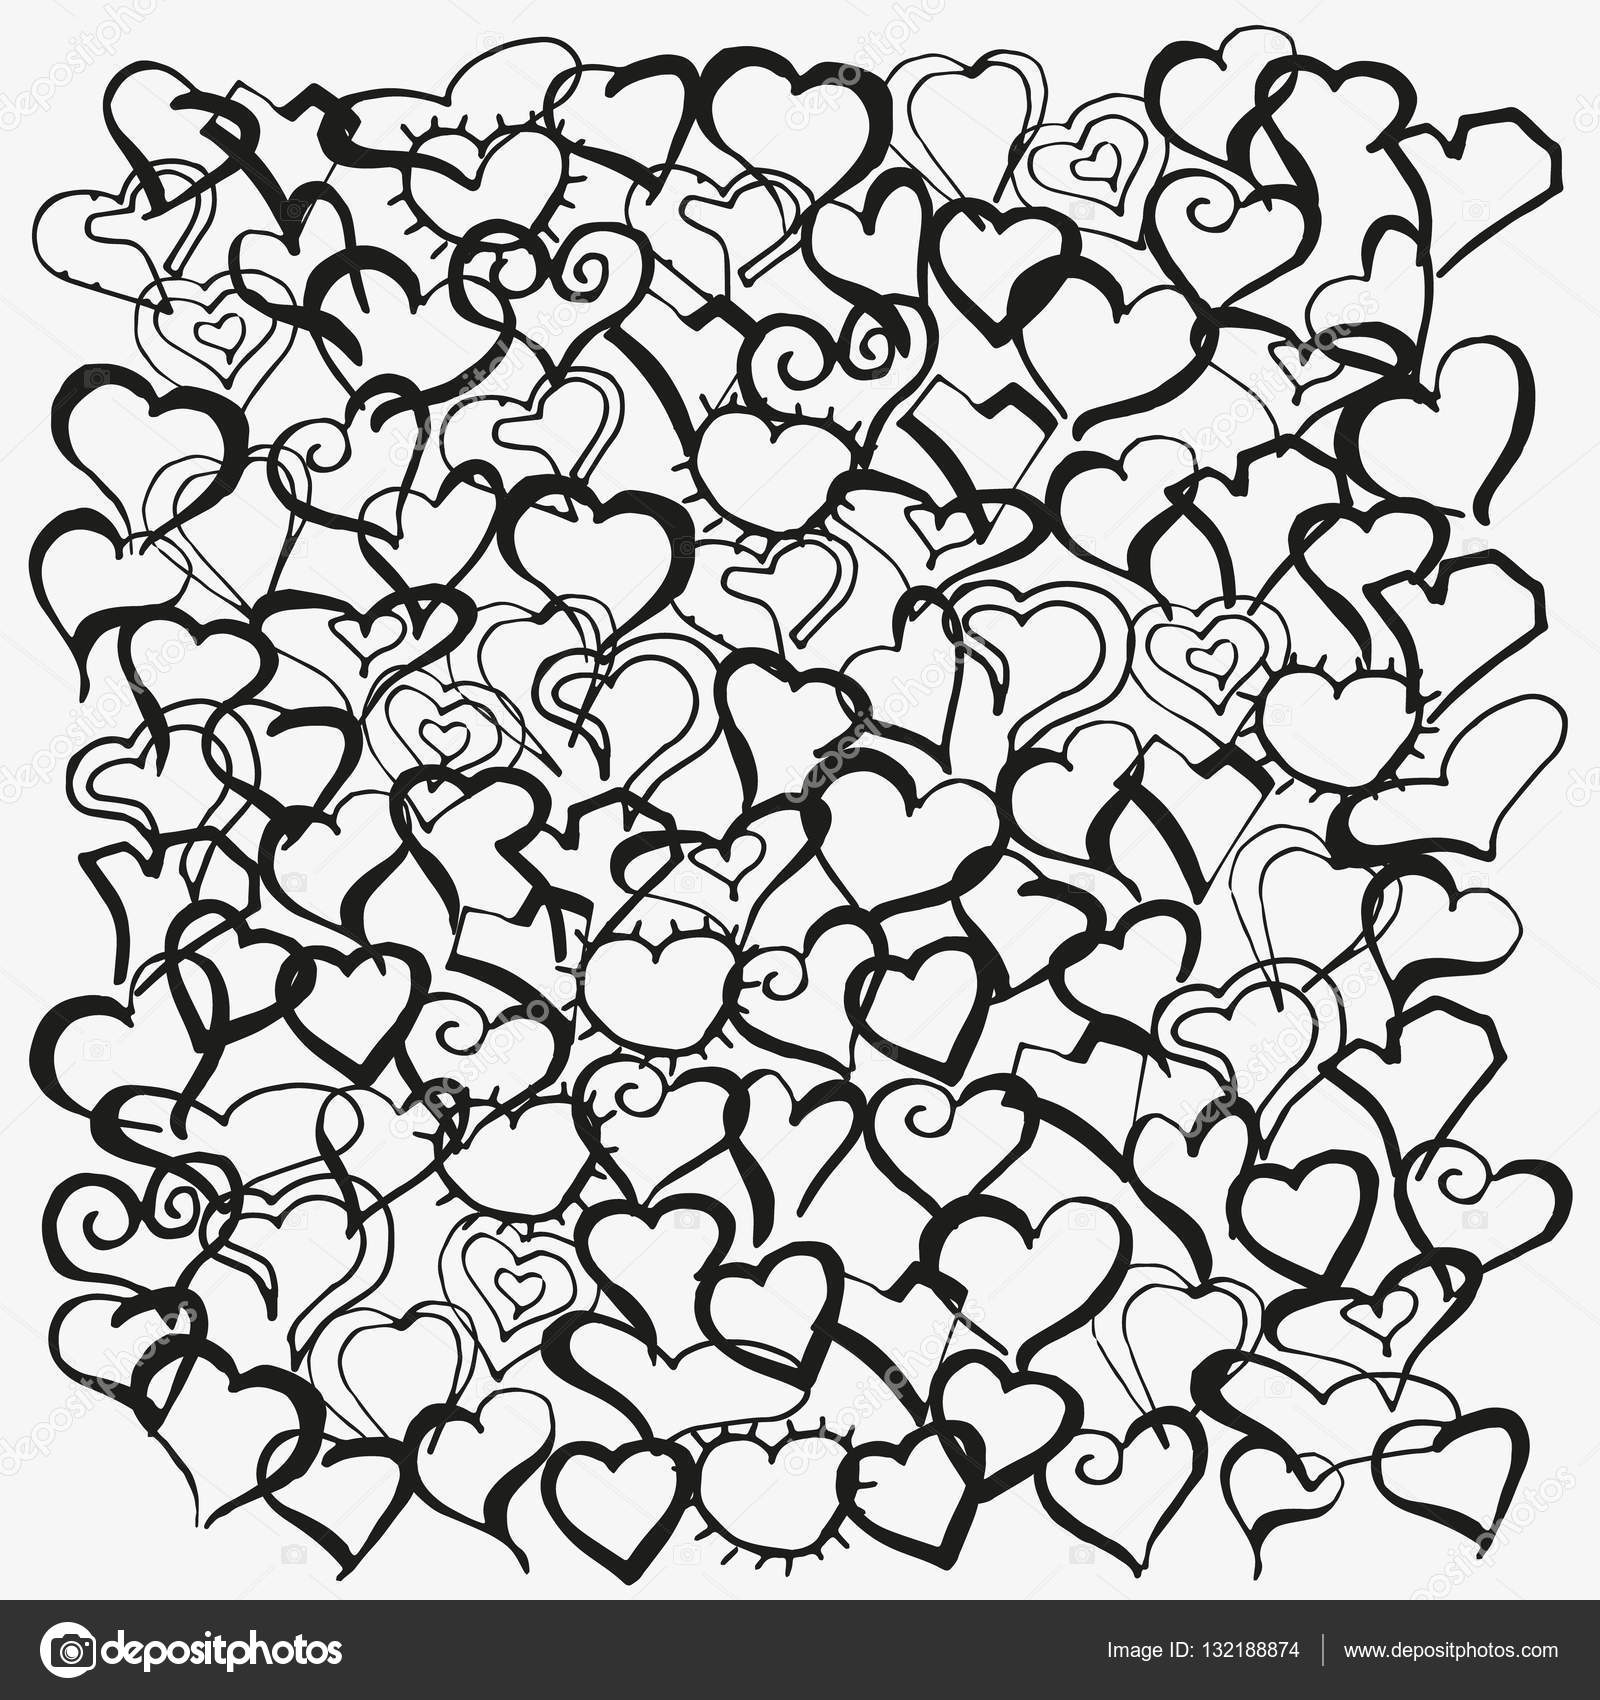 Disegni da colorare libro Pattern con cuori disegnati a mano Doodle Zentangle henn¨